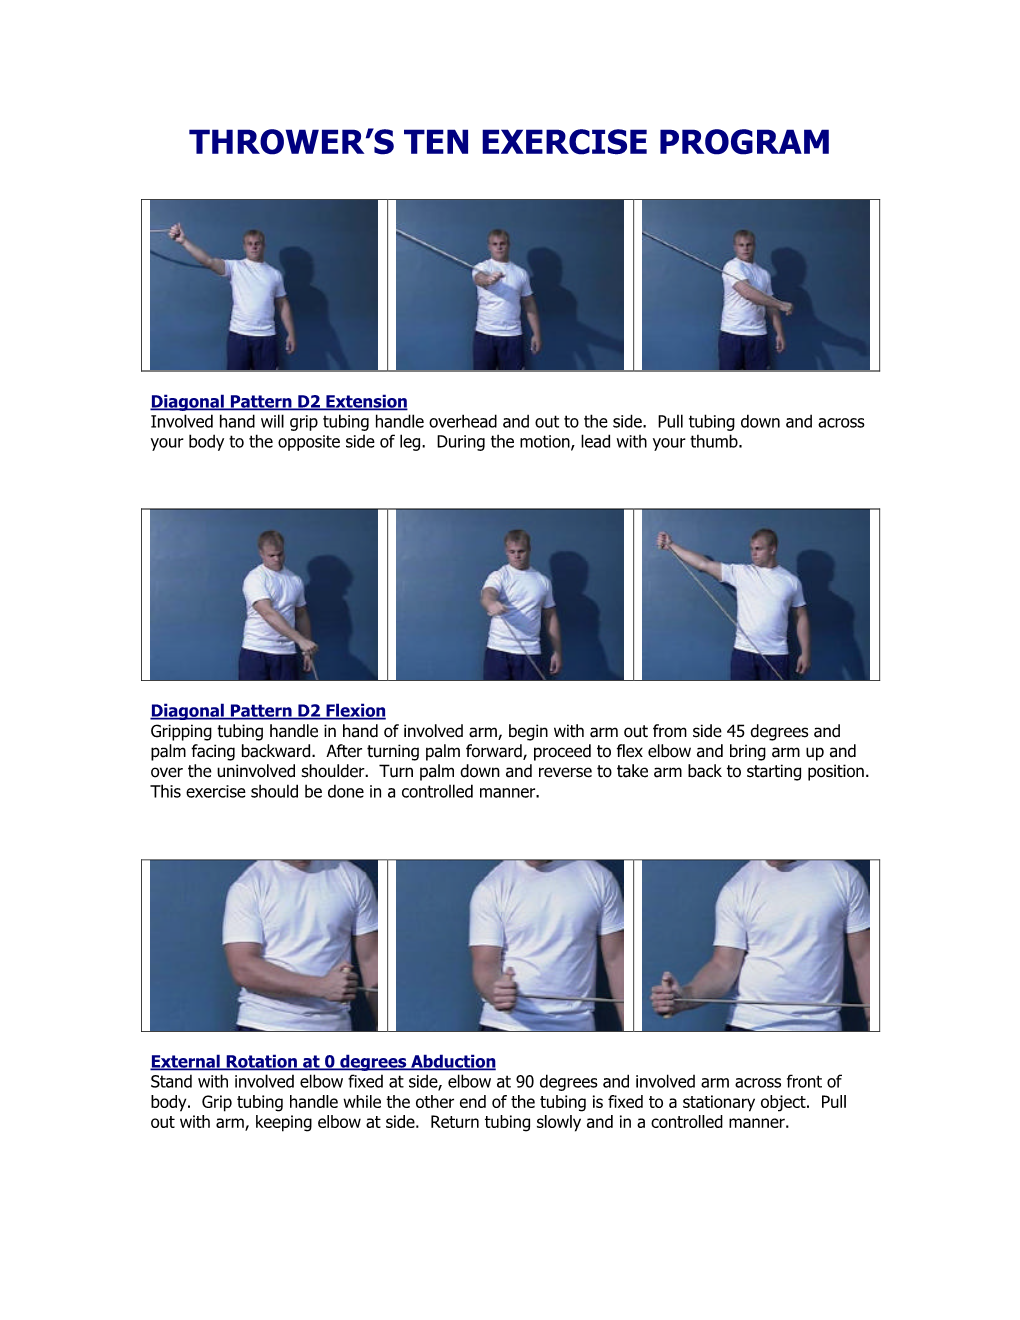 Thrower's Ten Exercise Program